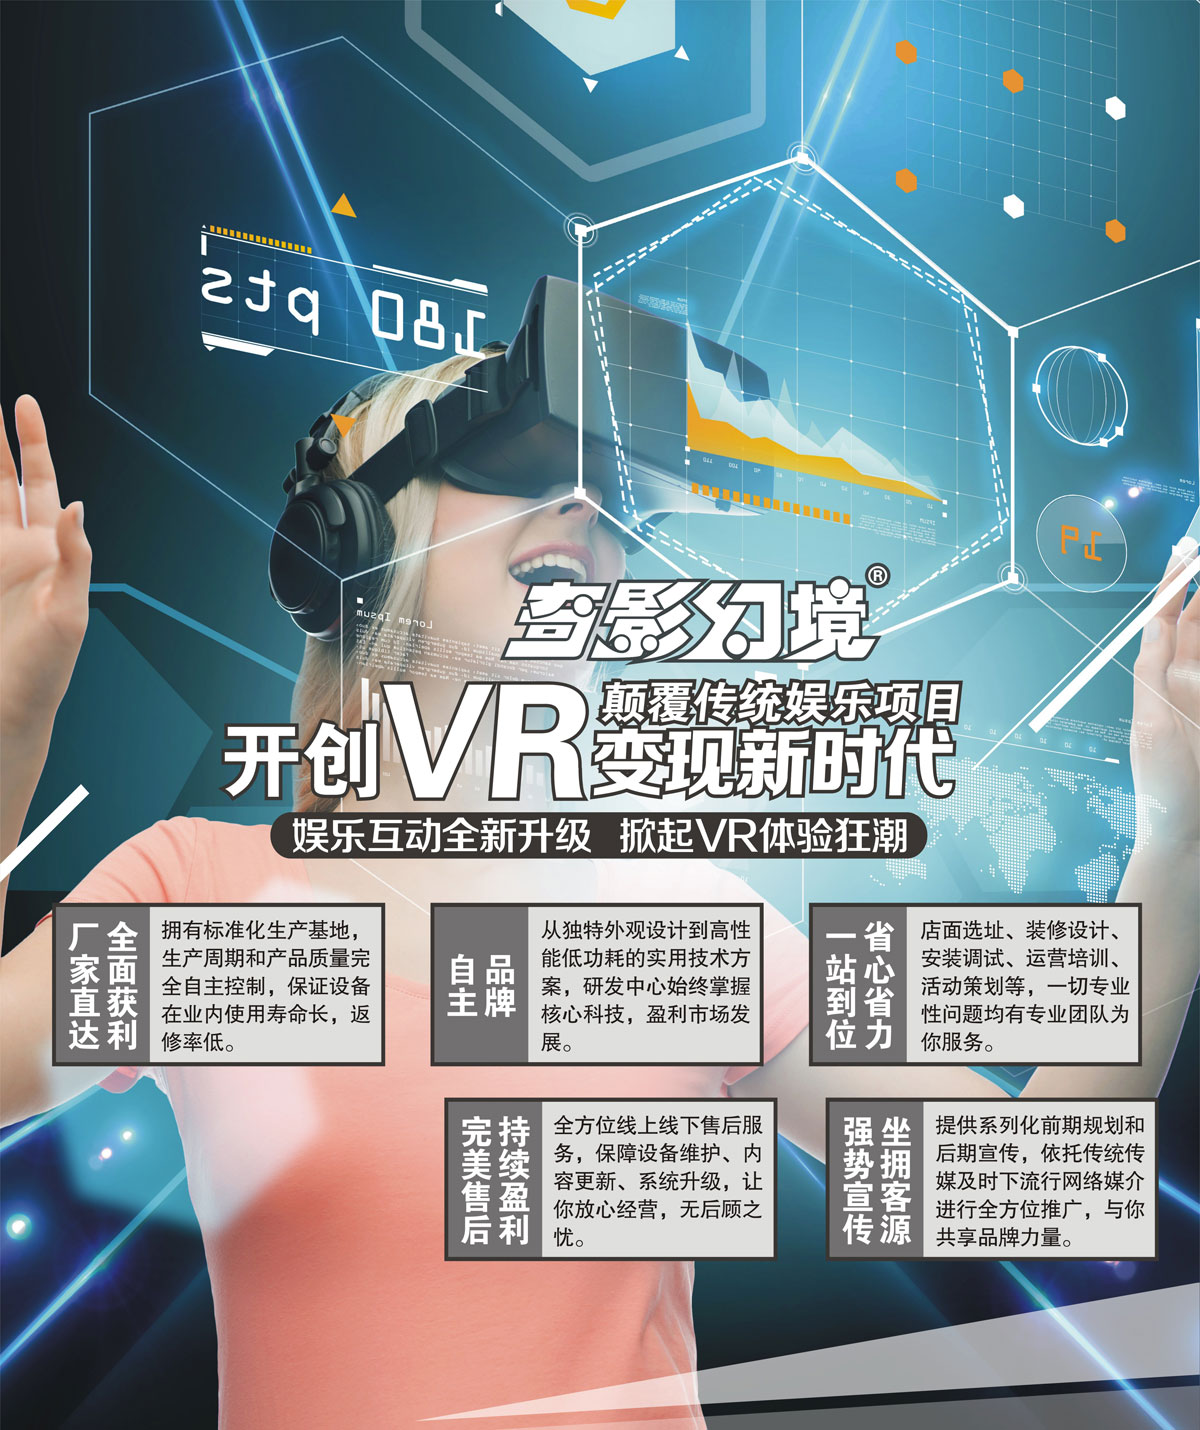 广州开创VR变现新时代颠覆传统娱乐项目.jpg